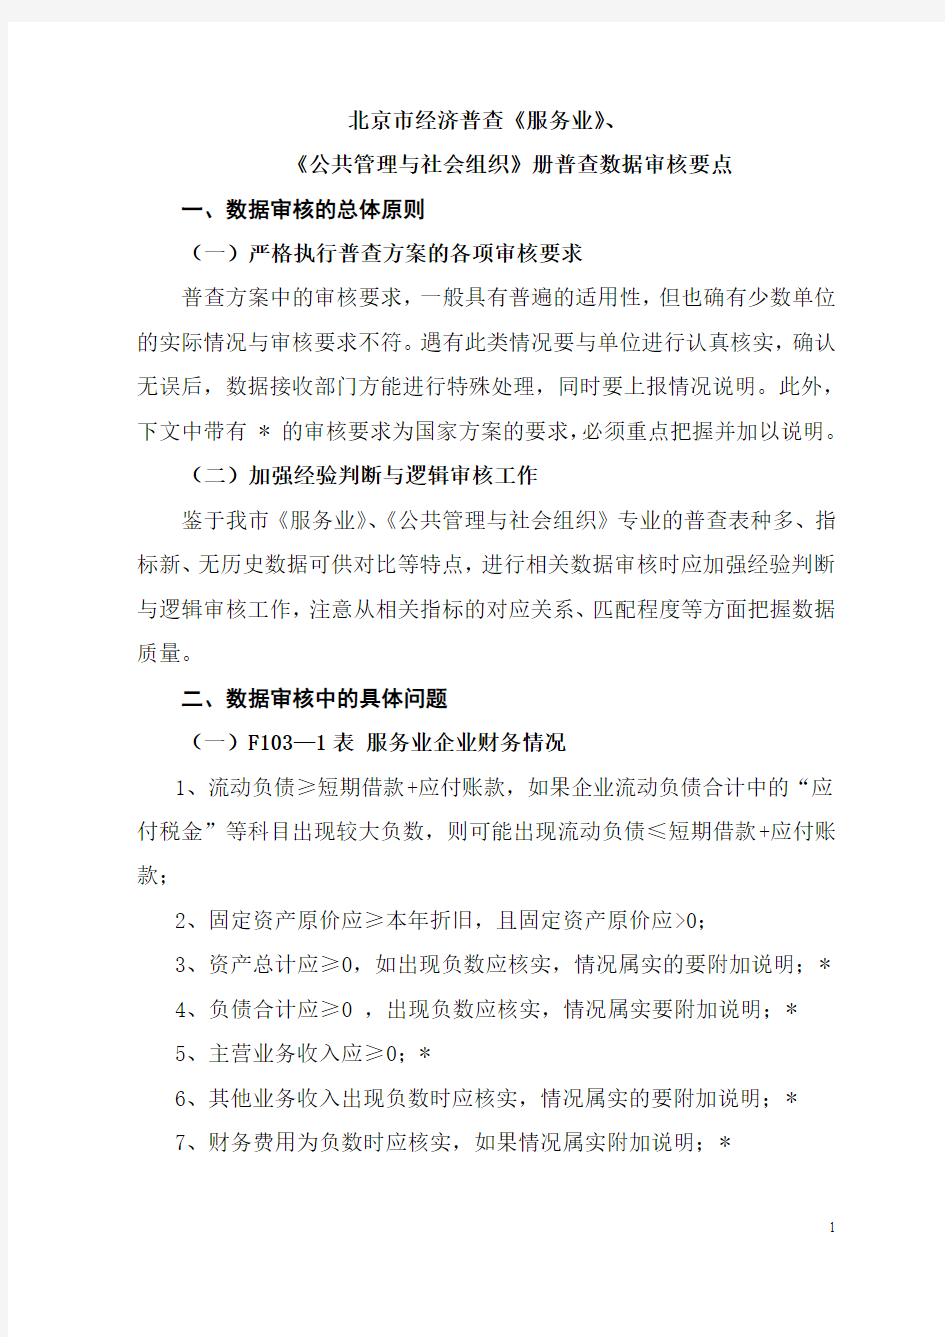 北京市经济普查《服务业》,《公共管理与社会组织》册普查数据审核要点